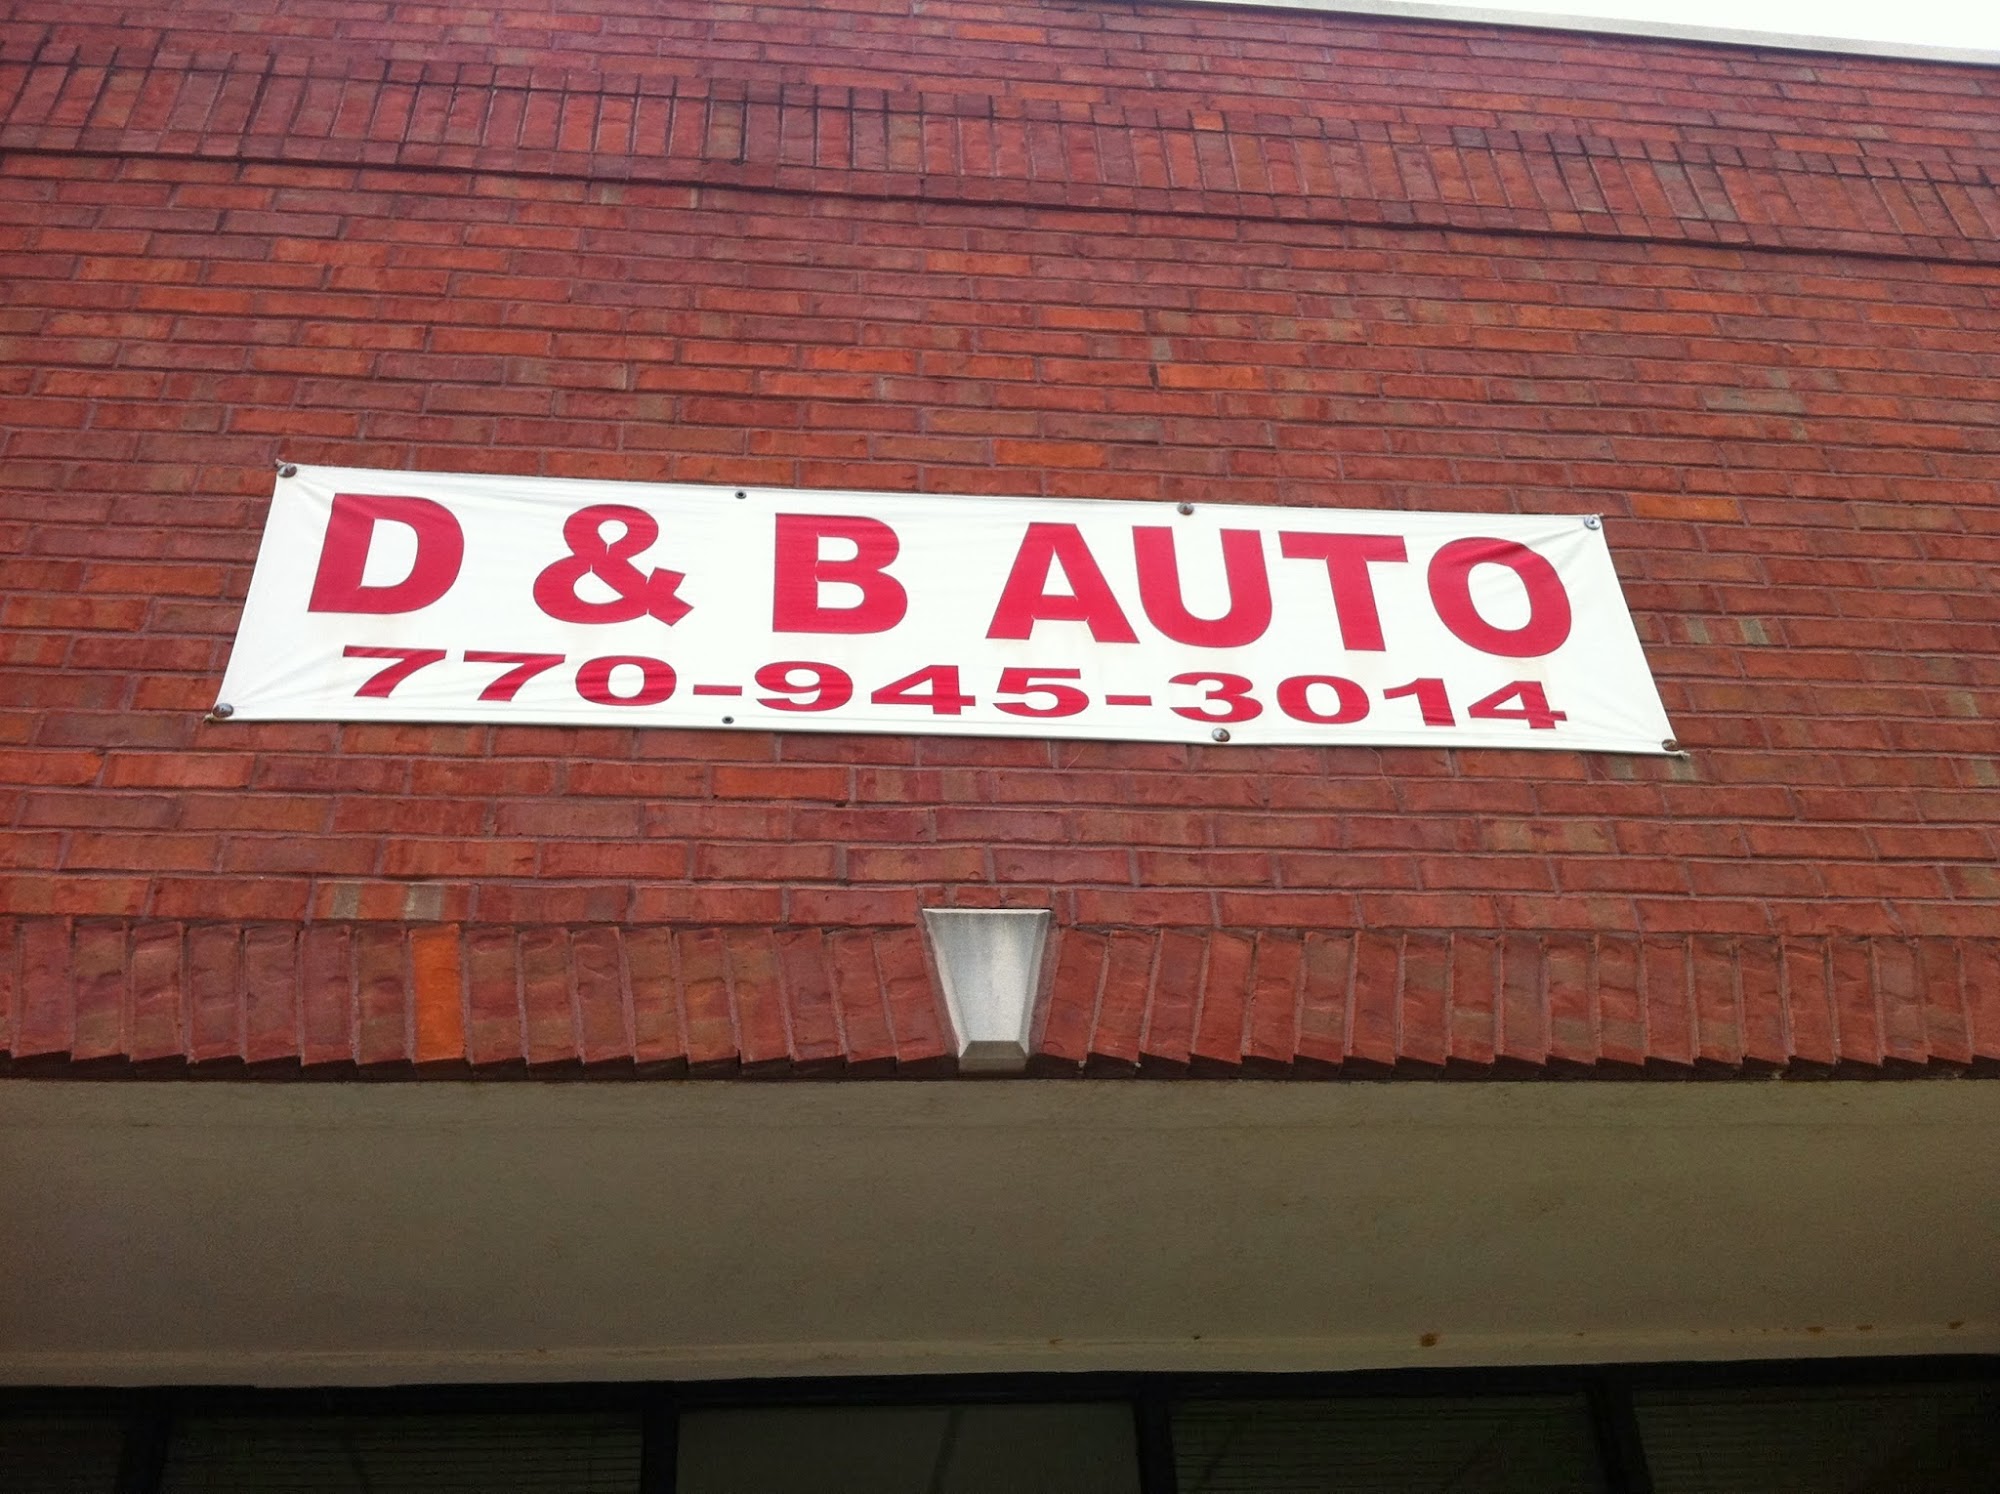 D & B Automotive Services